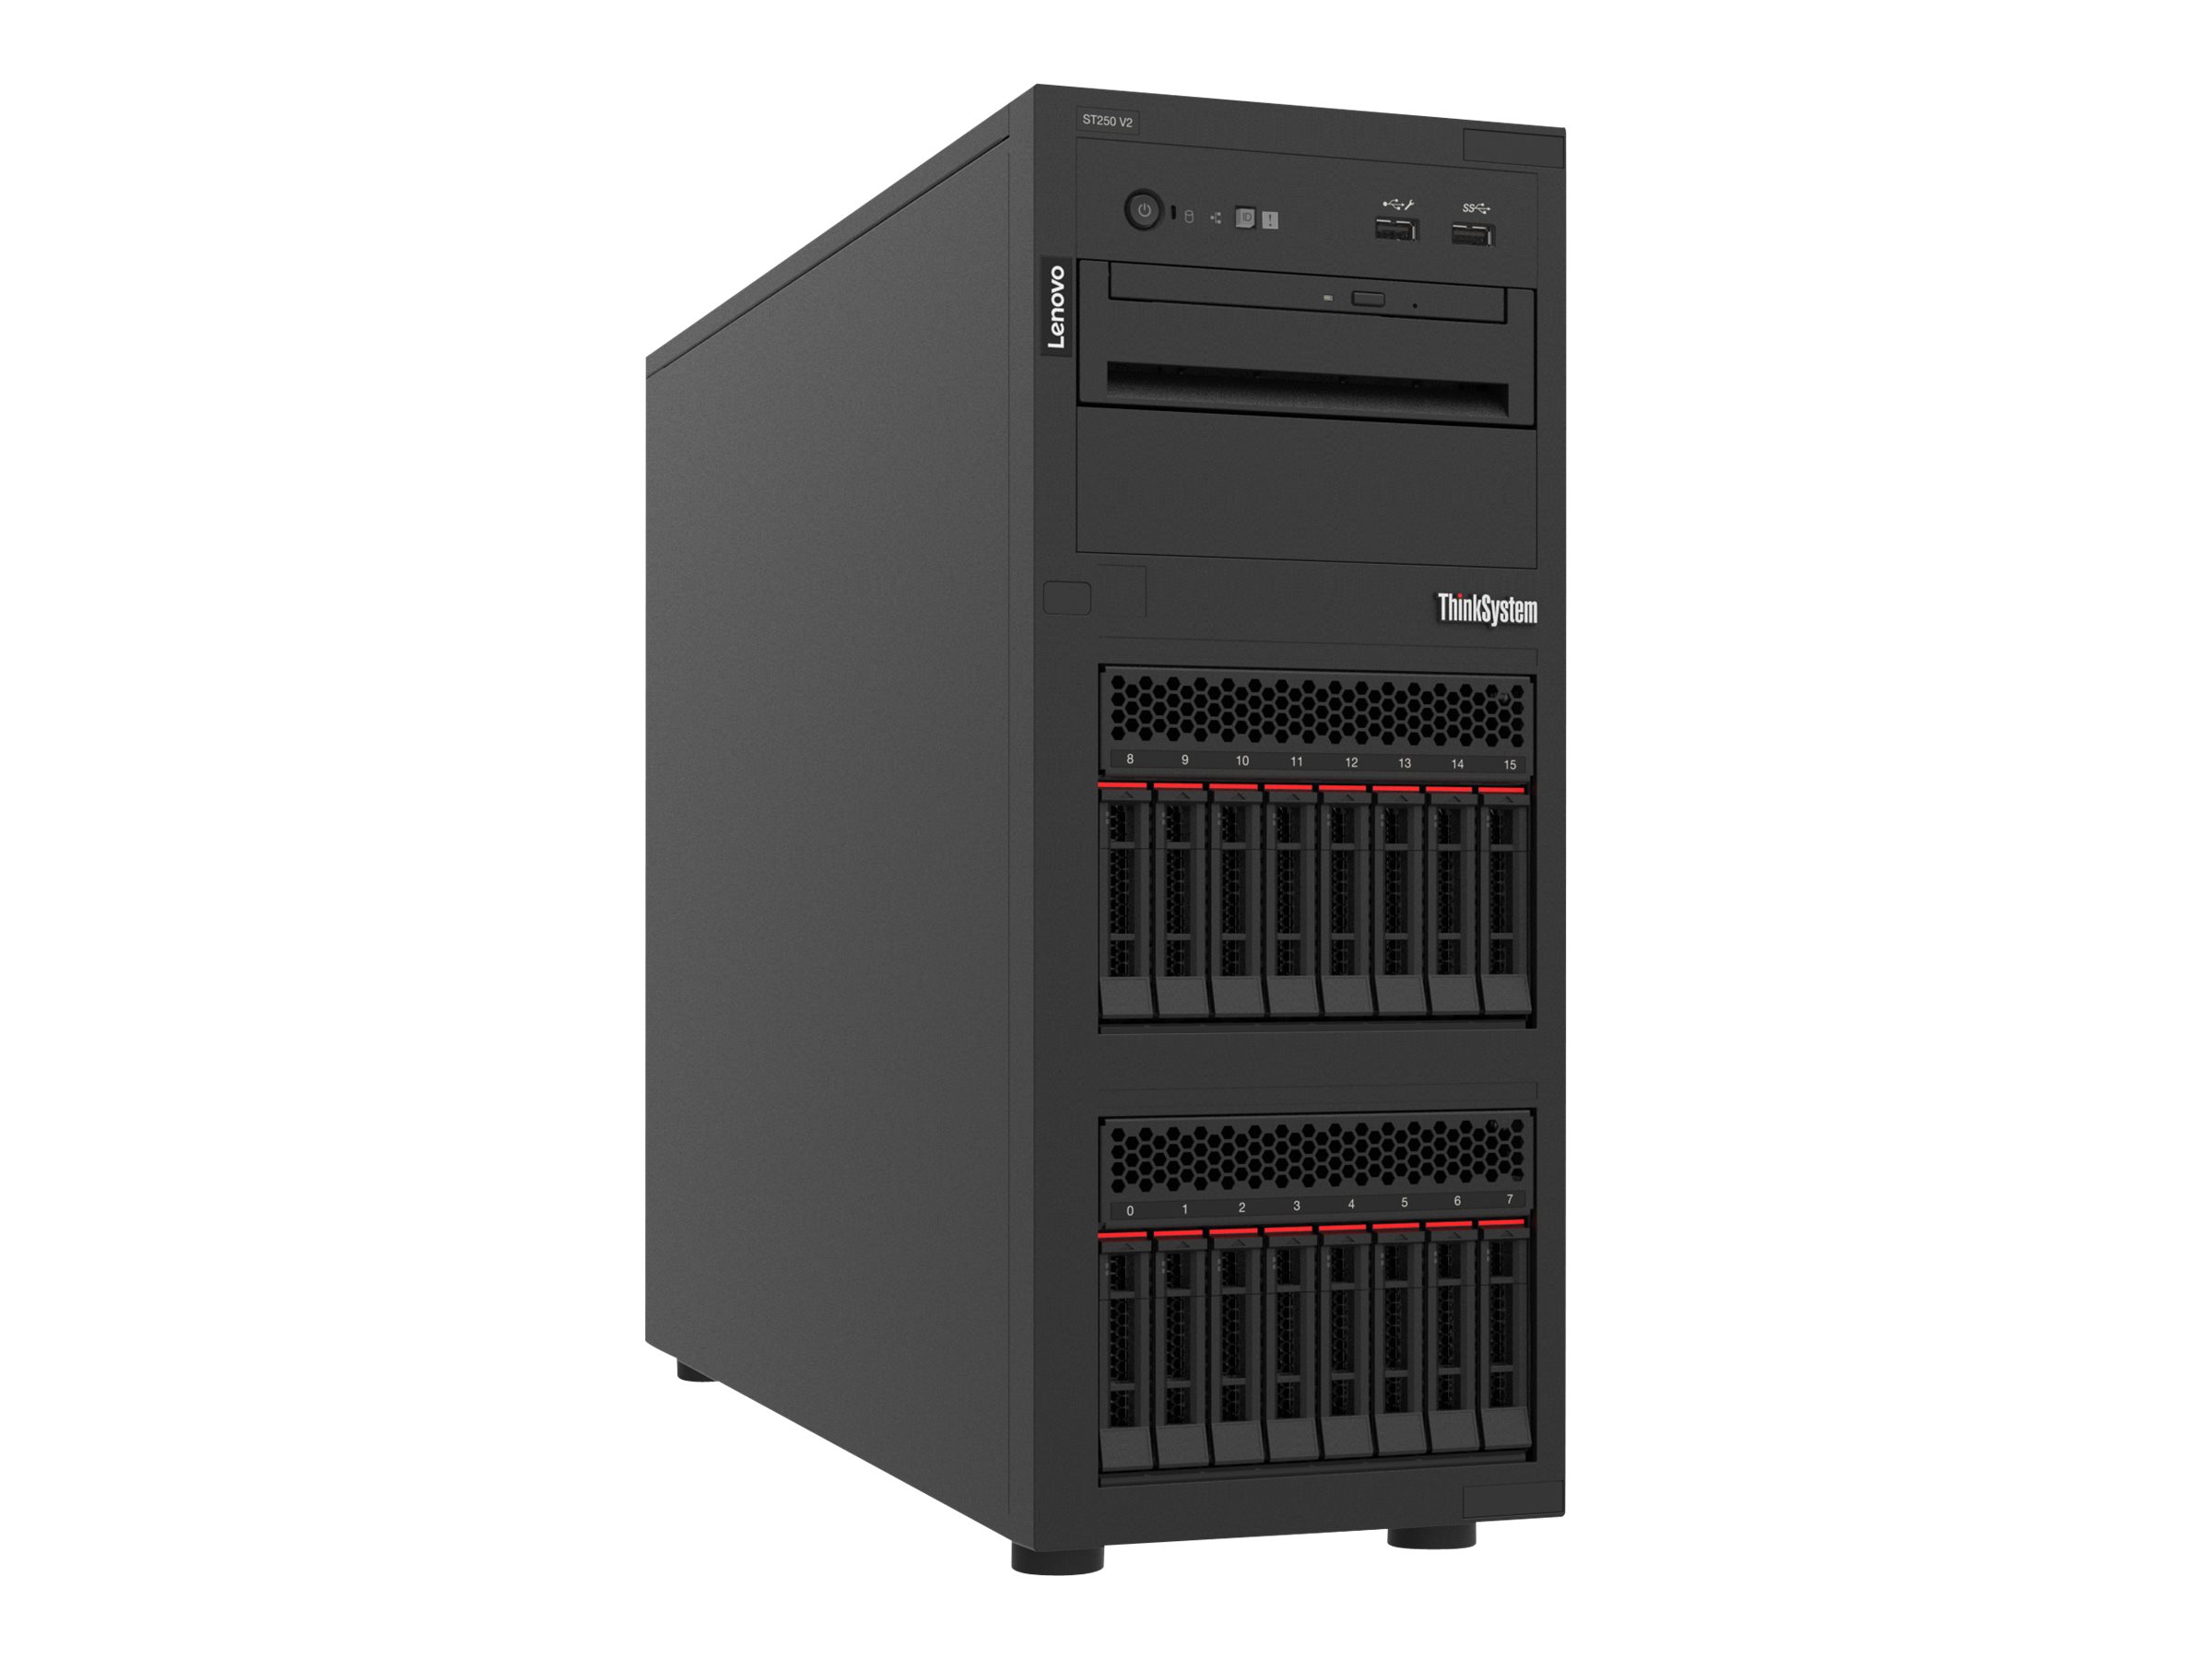 Lenovo ThinkSystem ST250 V2 7D8F - Server - Tower - 4U - 1-Weg - 1 x Xeon E-2334 / 3.4 GHz - RAM 16 GB - SAS - Hot-Swap 6.4 cm (2.5") Schacht/Schächte - keine HDD - Matrox G200 - GigE - kein Betriebssystem - Monitor: keiner